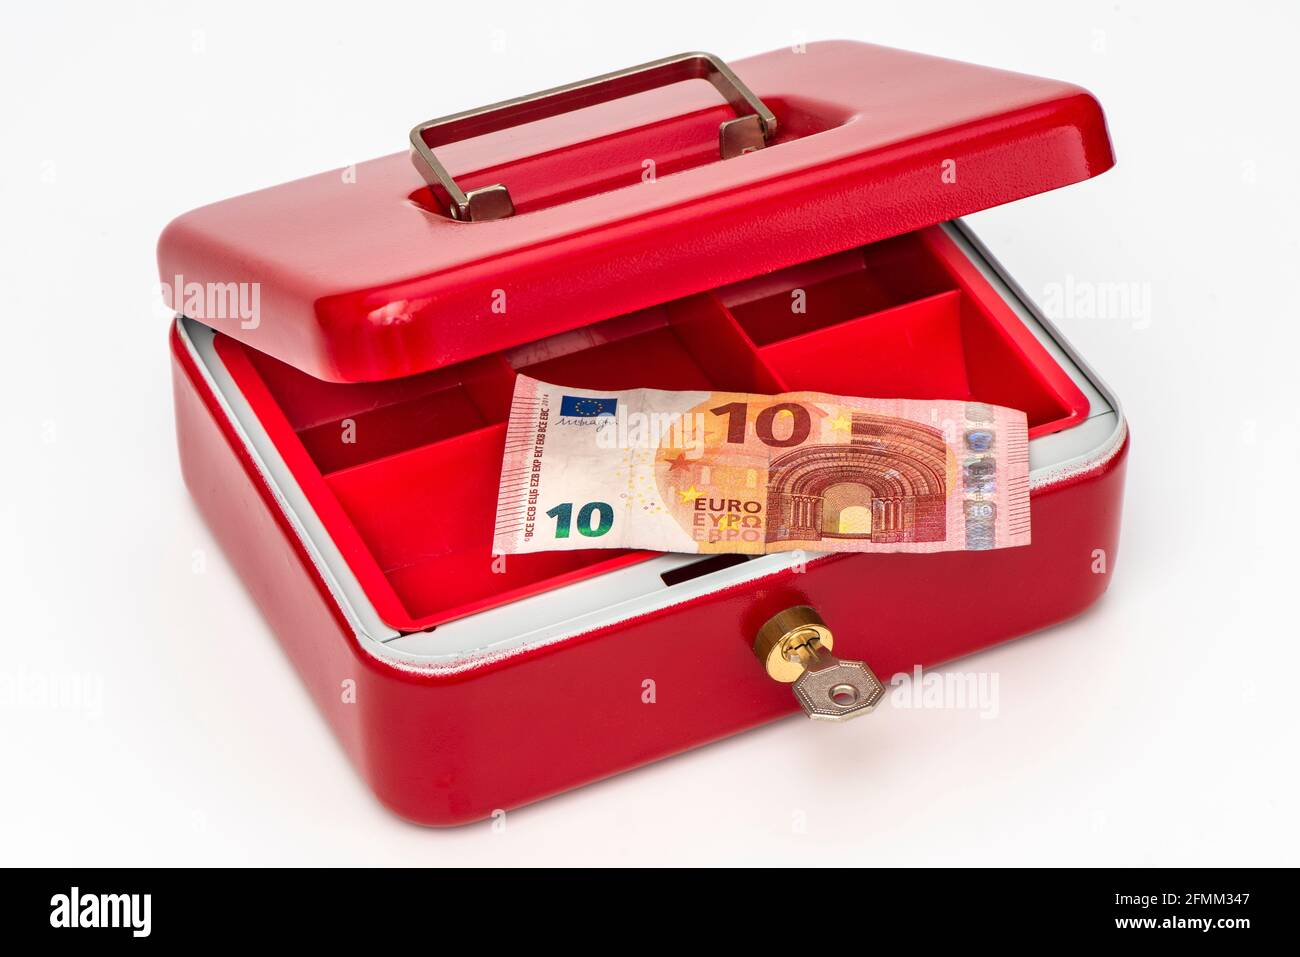 Geldkassette mit wenig Bargeld Stock Photo